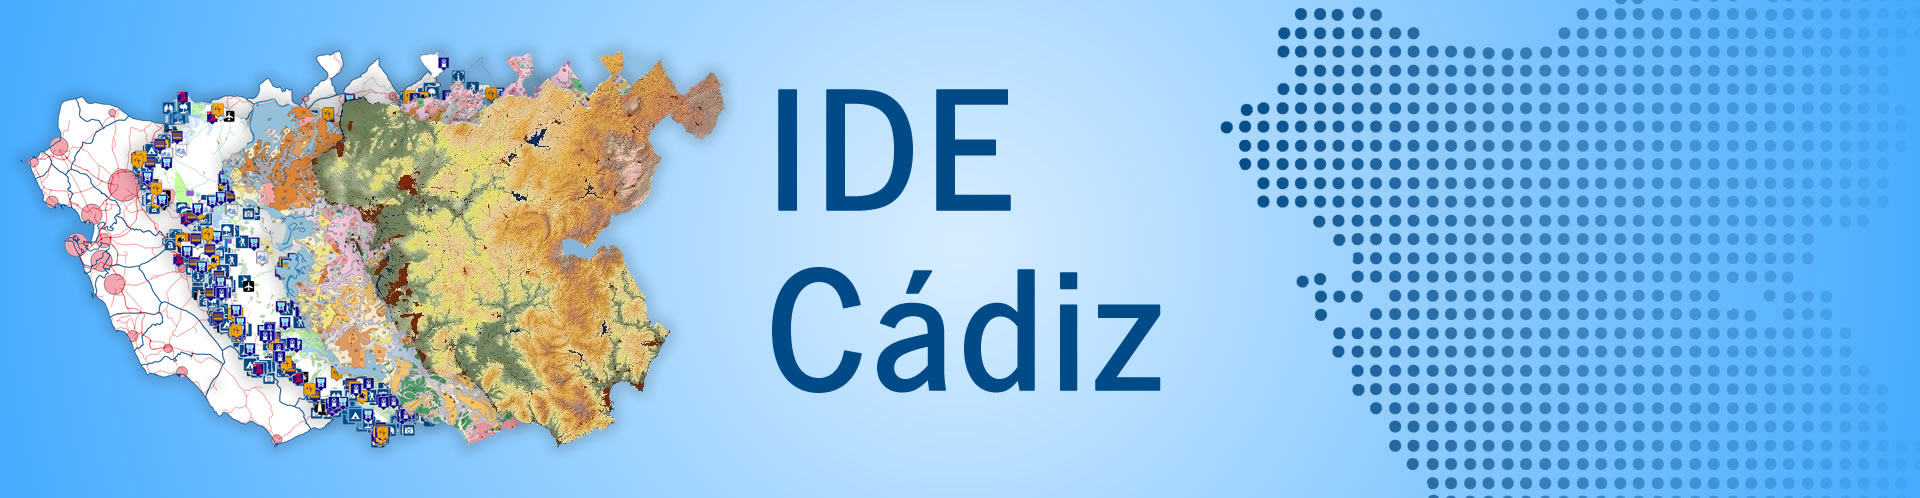 Portada_IDE_CADIZ